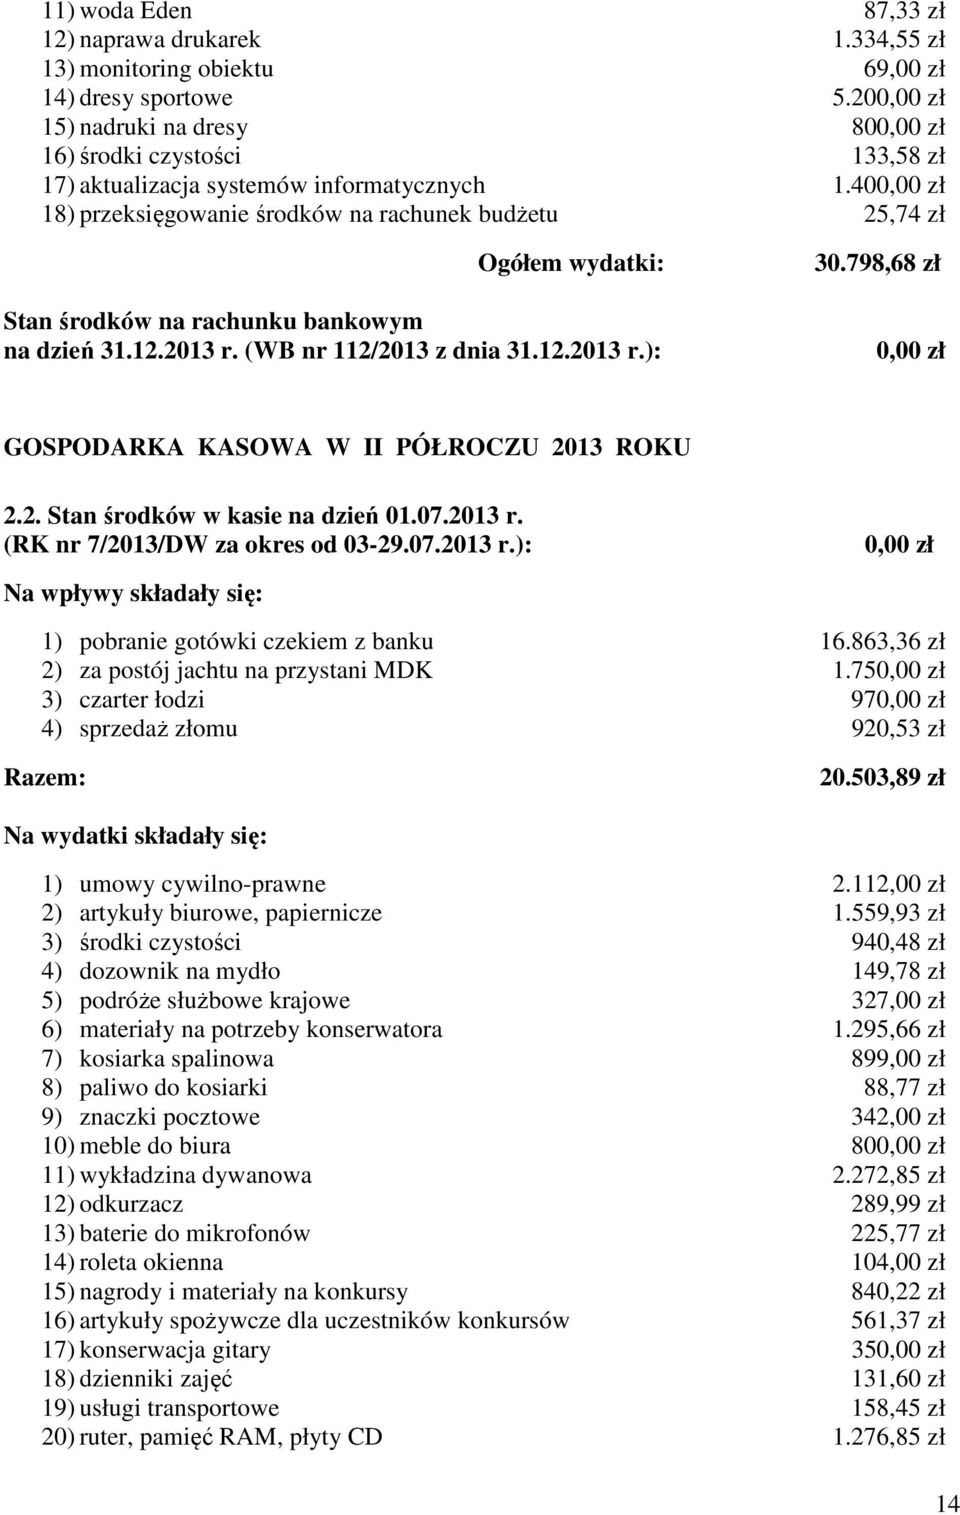 400,00 zł 18) przeksięgowanie środków na rachunek budżetu 25,74 zł Ogółem wydatki: Stan środków na rachunku bankowym na dzień 31.12.2013 r. (WB nr 112/2013 z dnia 31.12.2013 r.): 30.